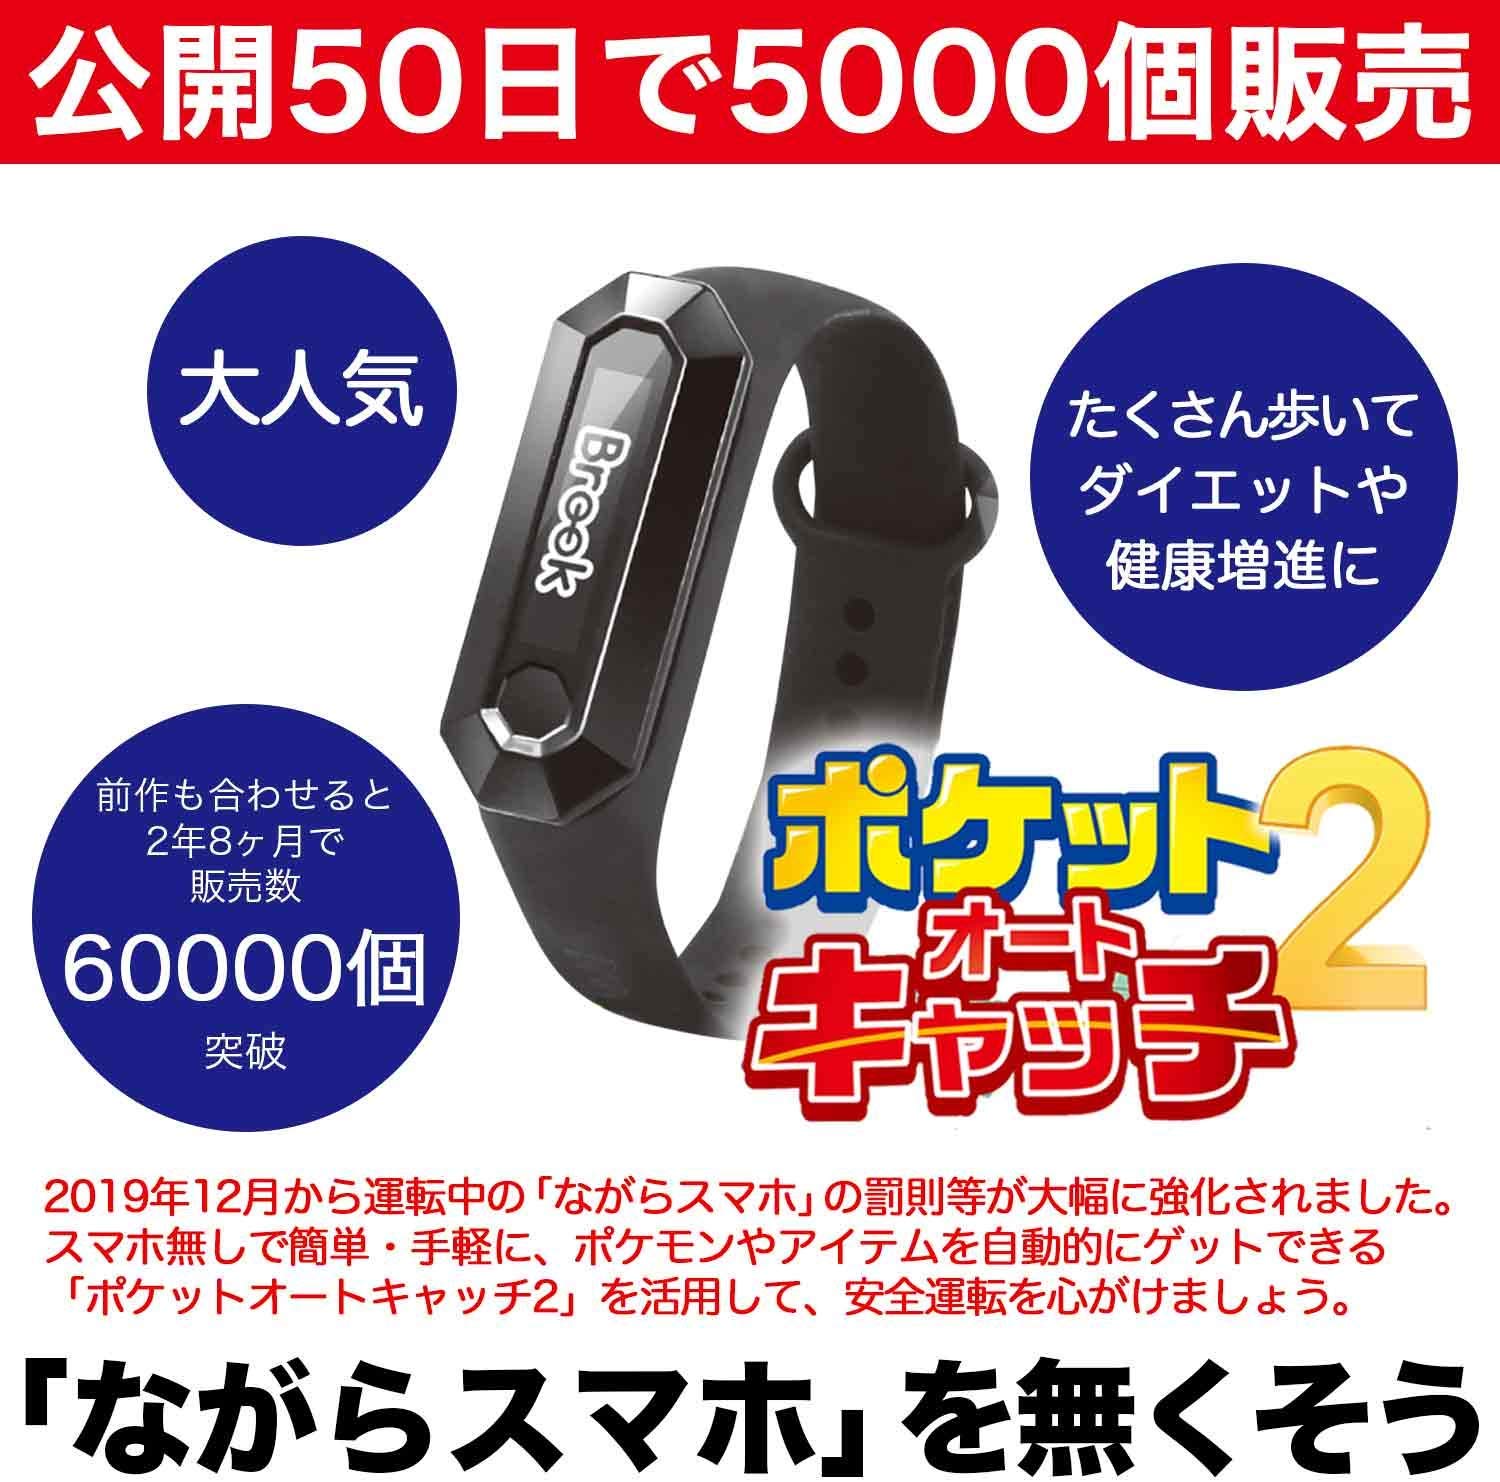 ポケモンgo 用自動化ツール ポケットオートキャッチ2 がamazonでクーポン2 000円割引 Appliv Games